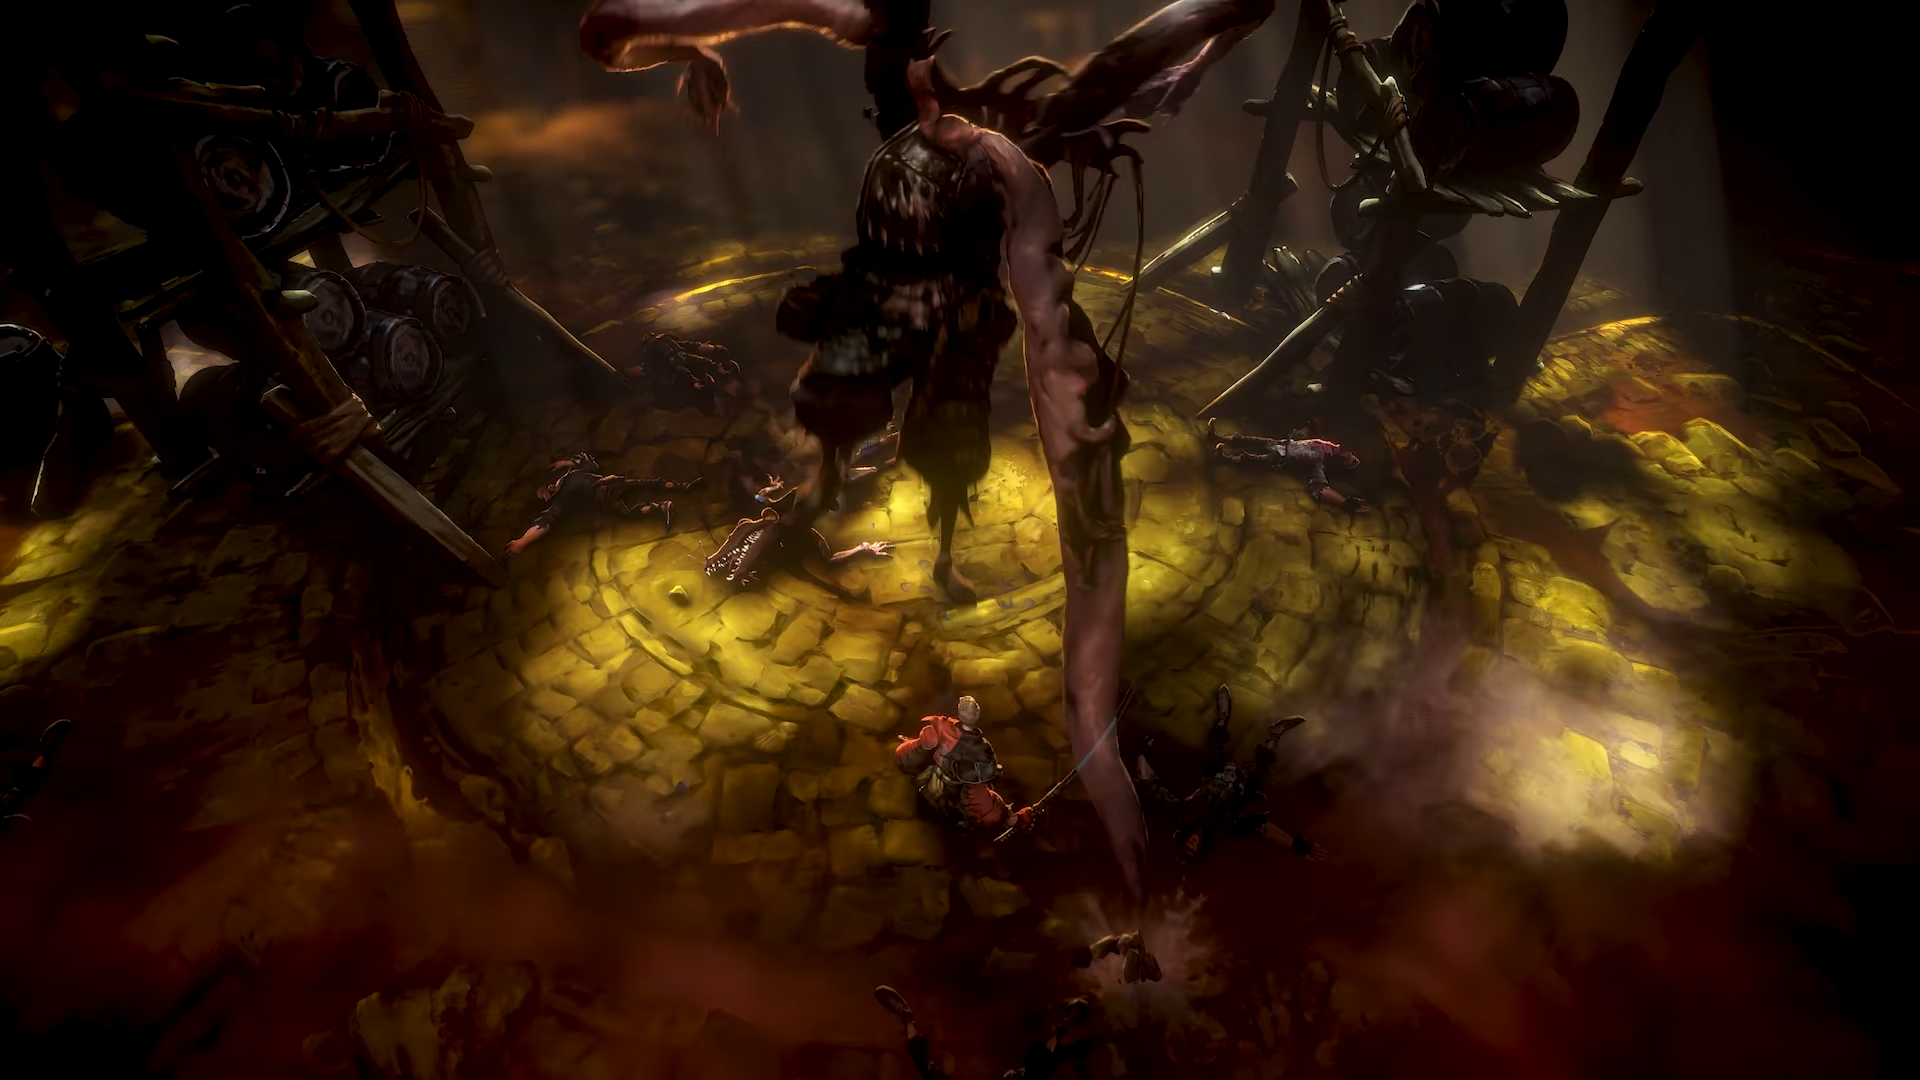 Imagem de Darak Falstead com tentáculos brotando de suas costas em No Rest for the Wicked.